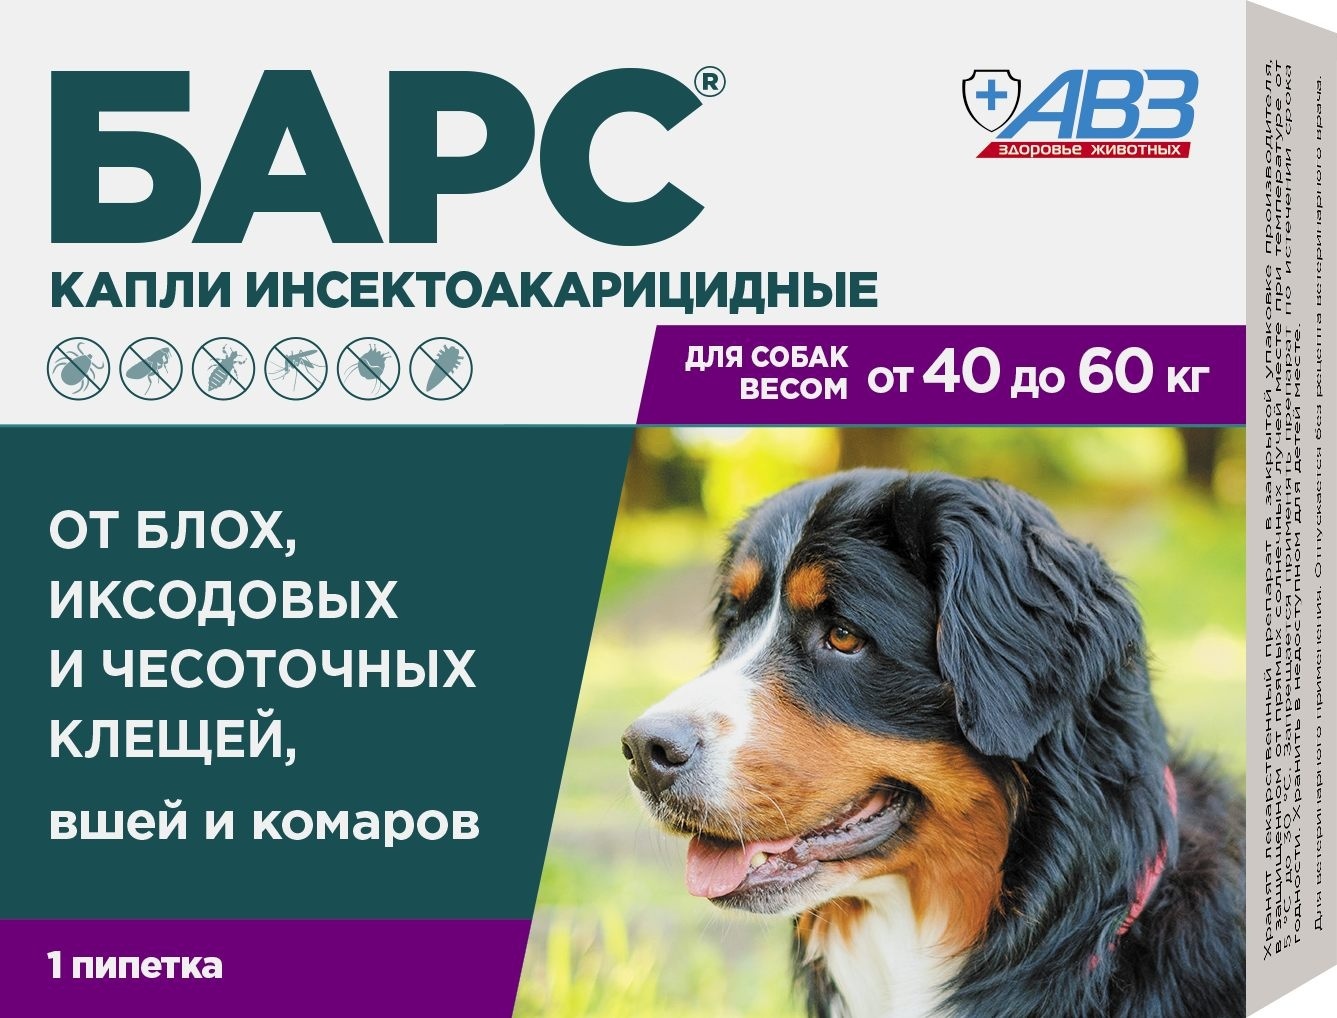 Агроветзащита Агроветзащита бАРС капли инсектоакарицидные для собак от 40 до 60 кг, 1 пипетка 4,02 мл (17 г) авз барс капли инсектоакарицидные для собак от 40 до 60 кг 1 пипетка 4 02 мл